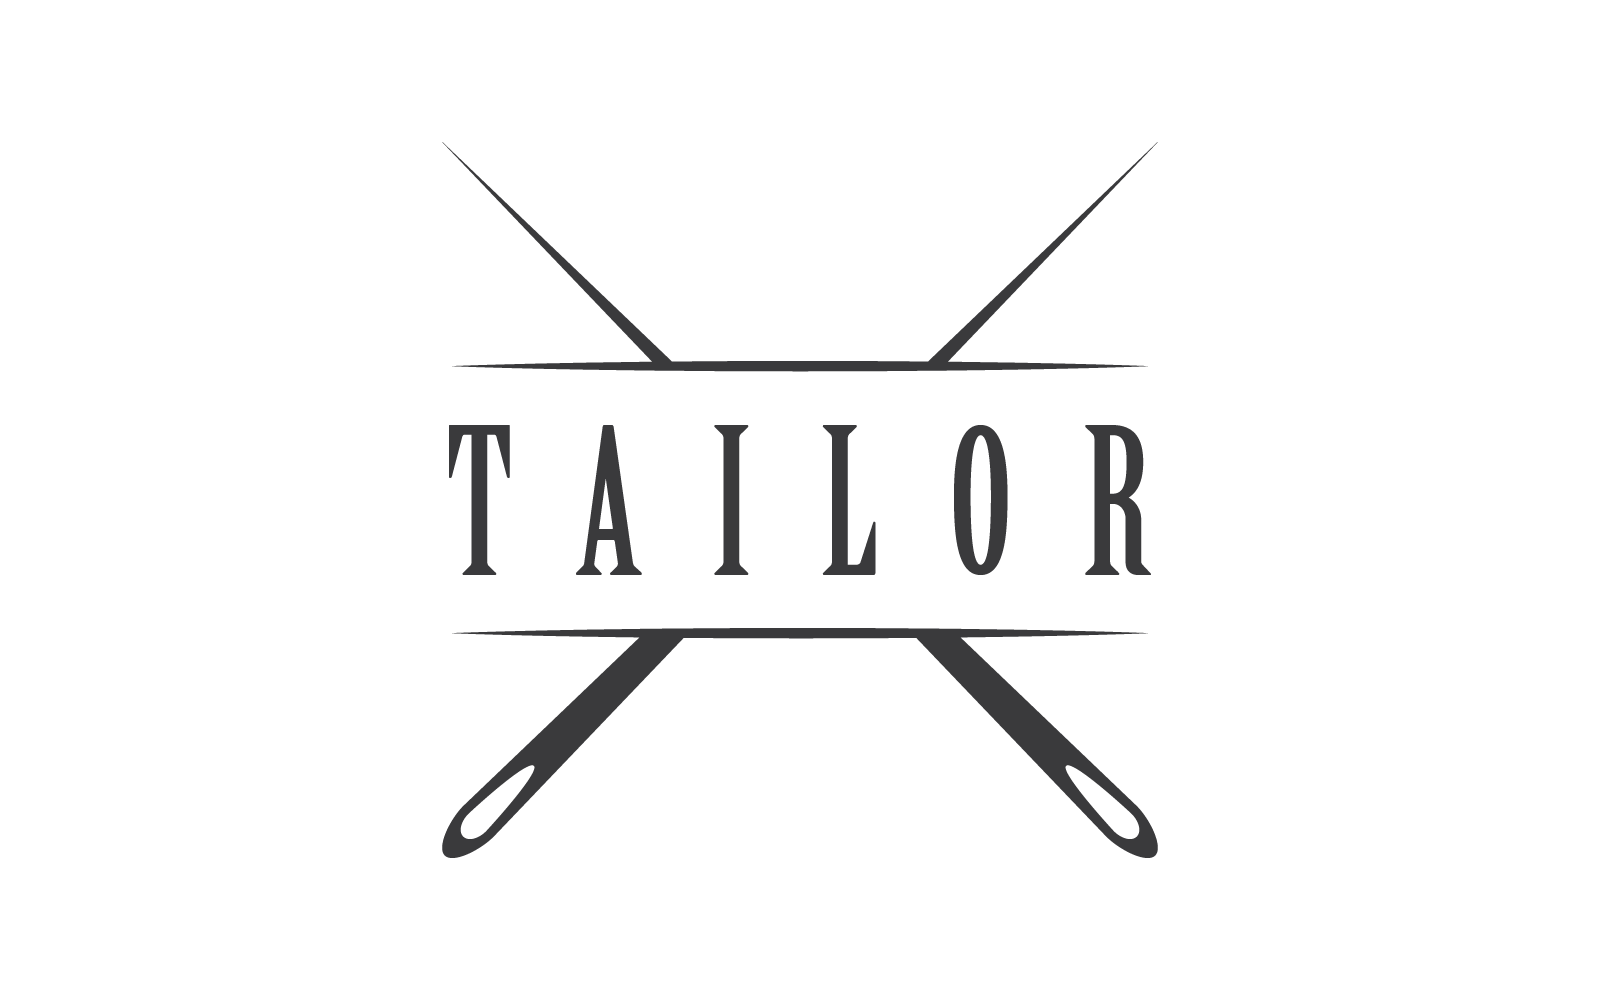 Tailor or textile logo illustration flat design